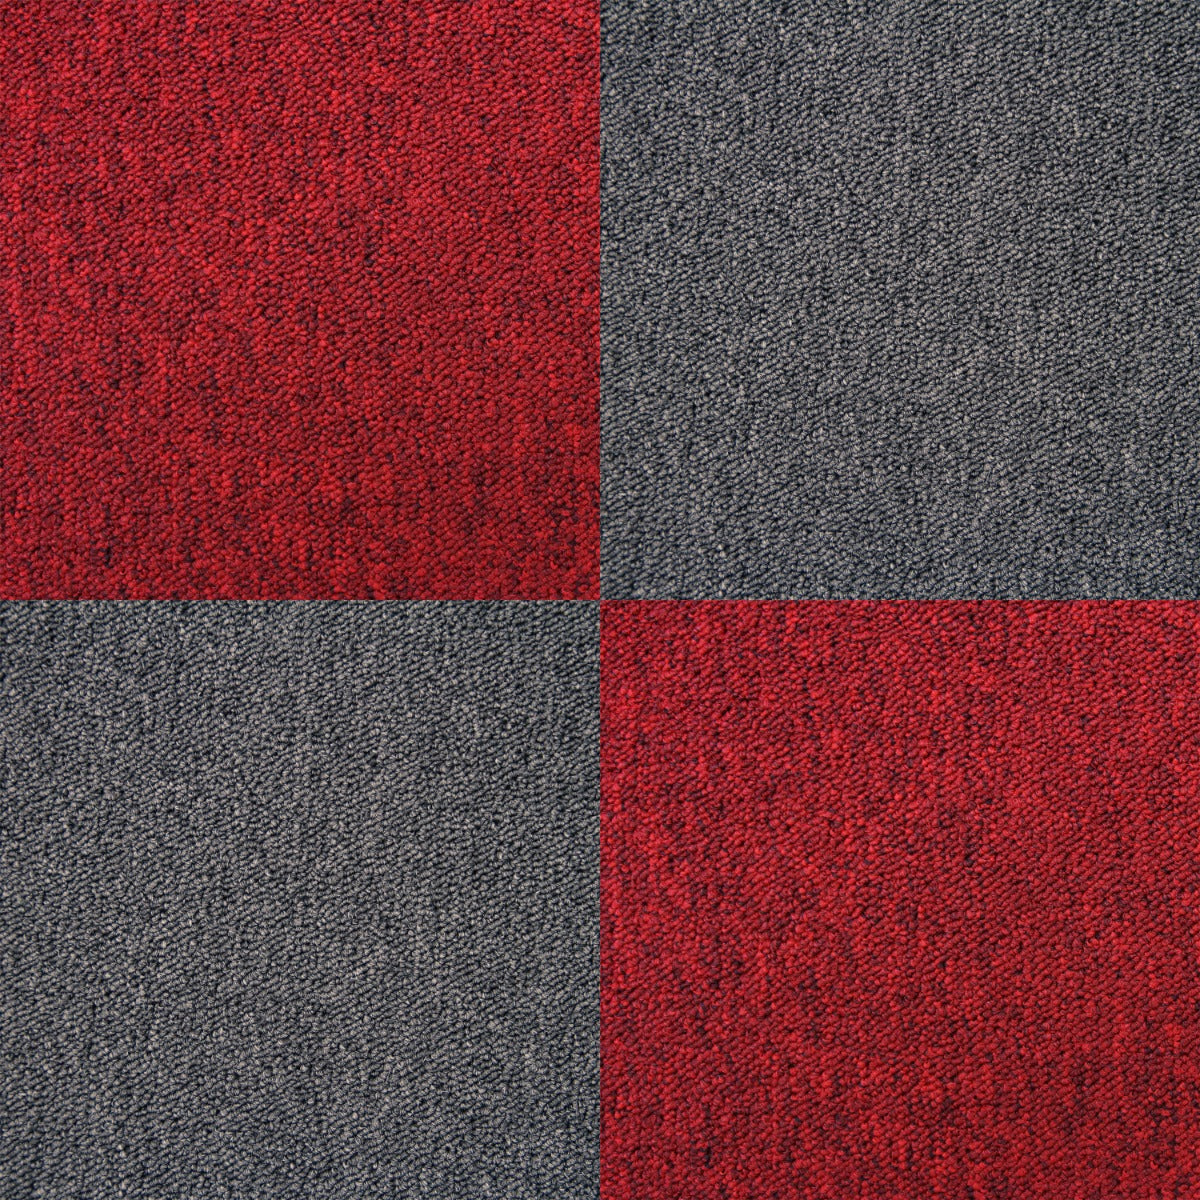 20 x Carpet Tiles 5m2 / Scarlet Red